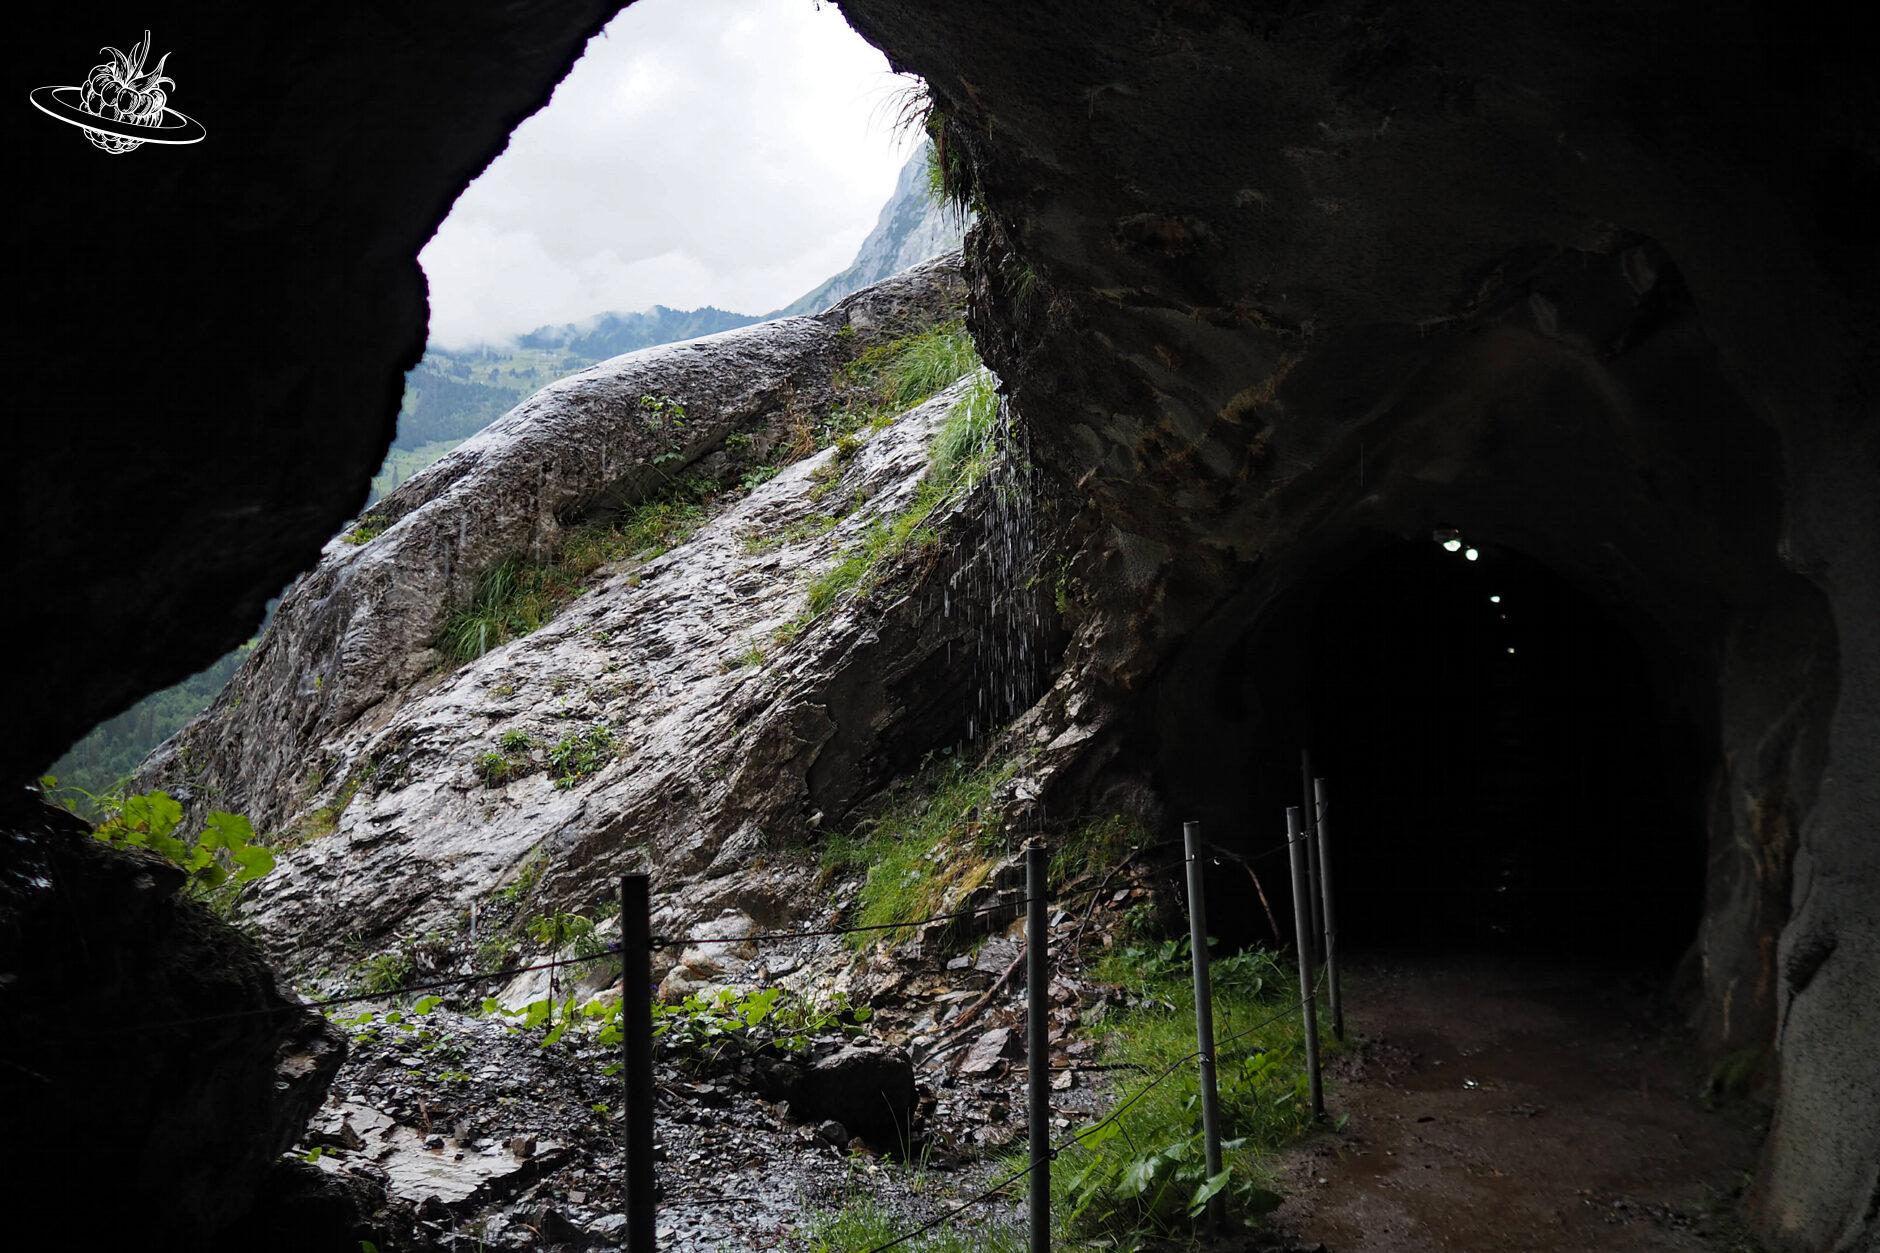 Blick aus einem Tunnel auf einen Stein bei Regenwetter